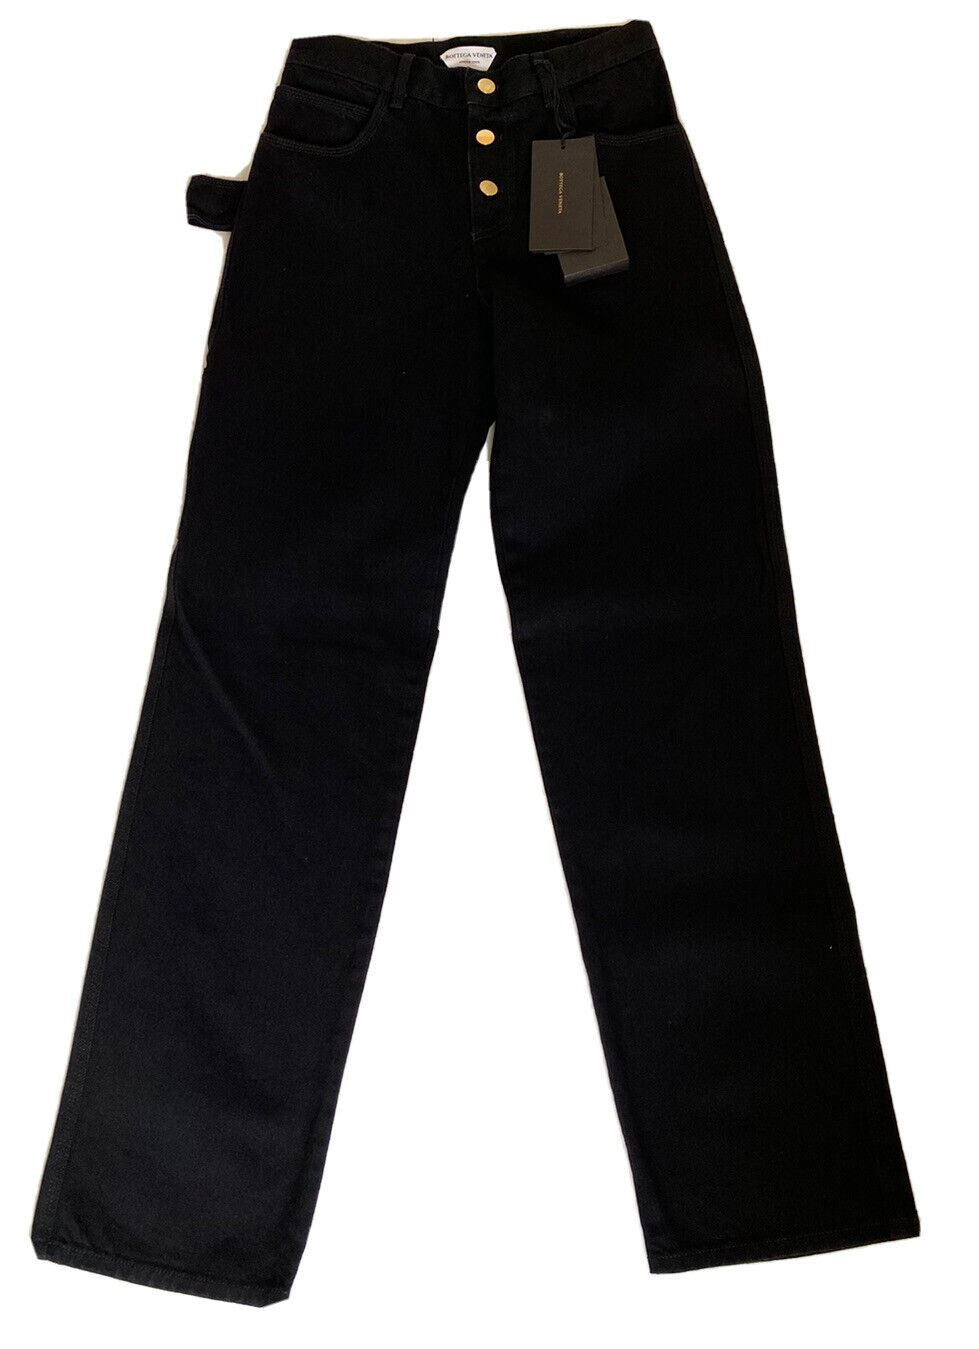 Neu mit Etikett: 950 $ Bottega Veneta High-Waist-Jeans Schwarz 4 US (40 Euro) 618452 Italien